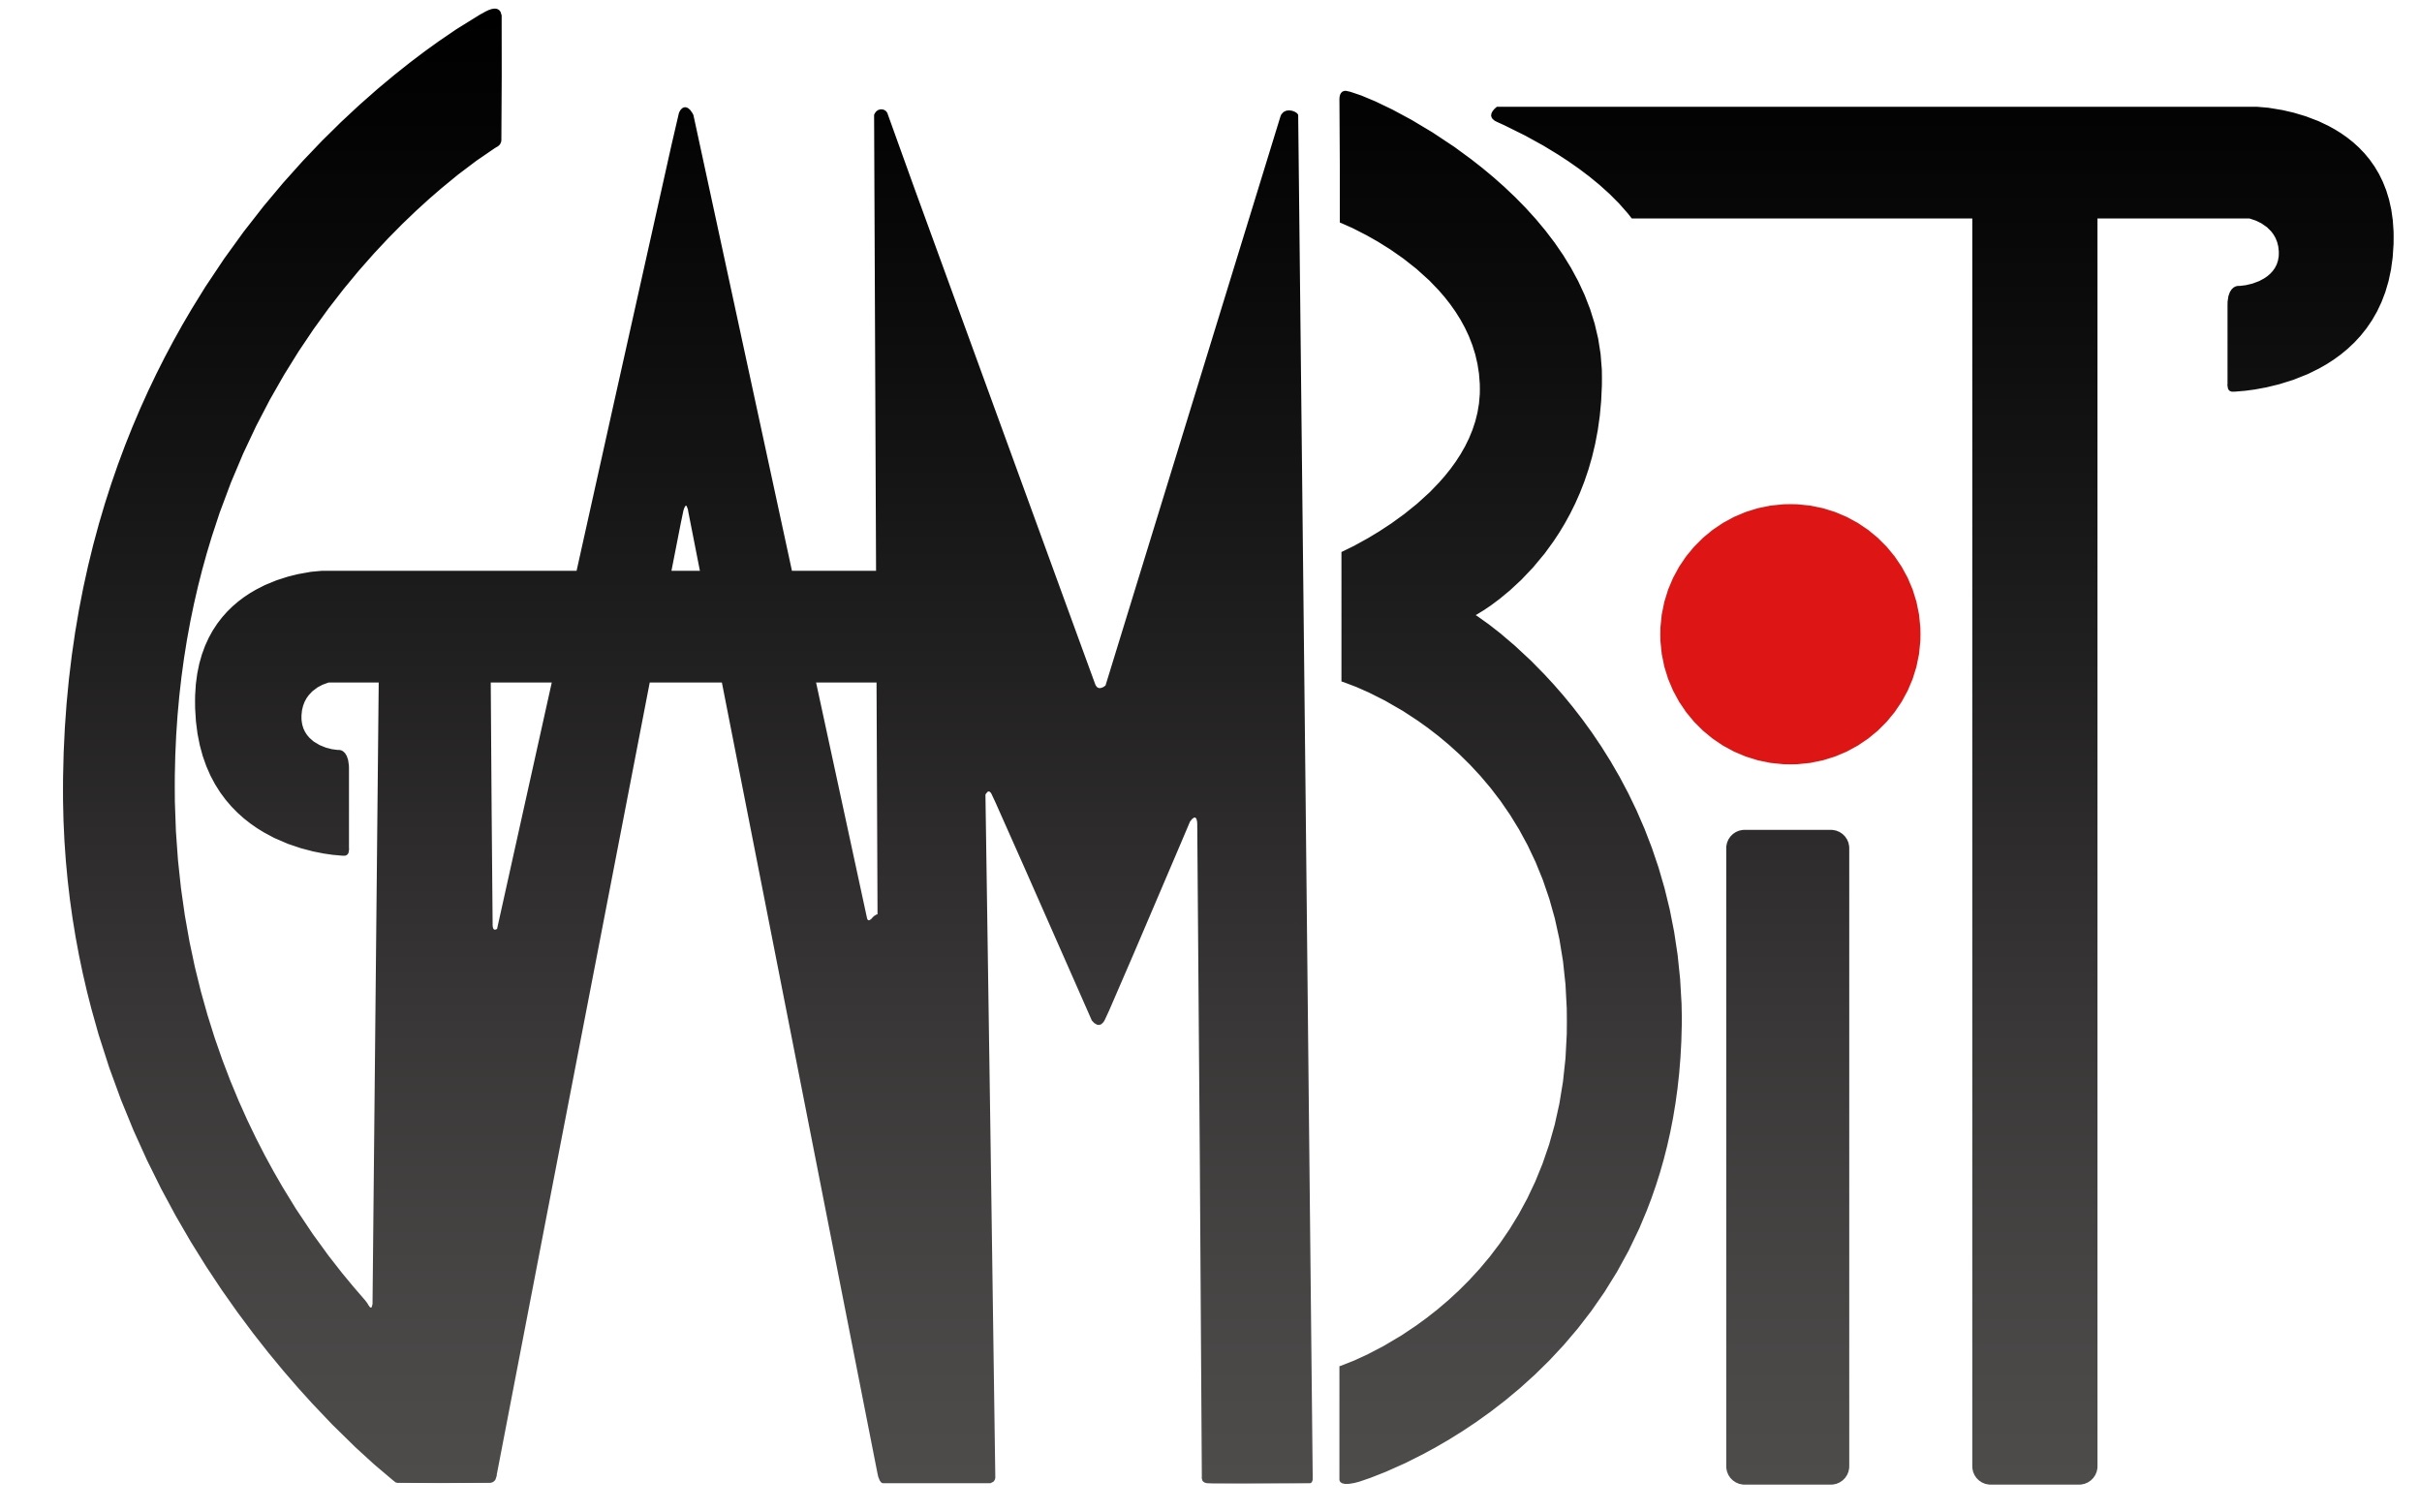 GAMBIT Logo.jpg 6b6a324a51cf8ffe3b1c1b56be00c97e